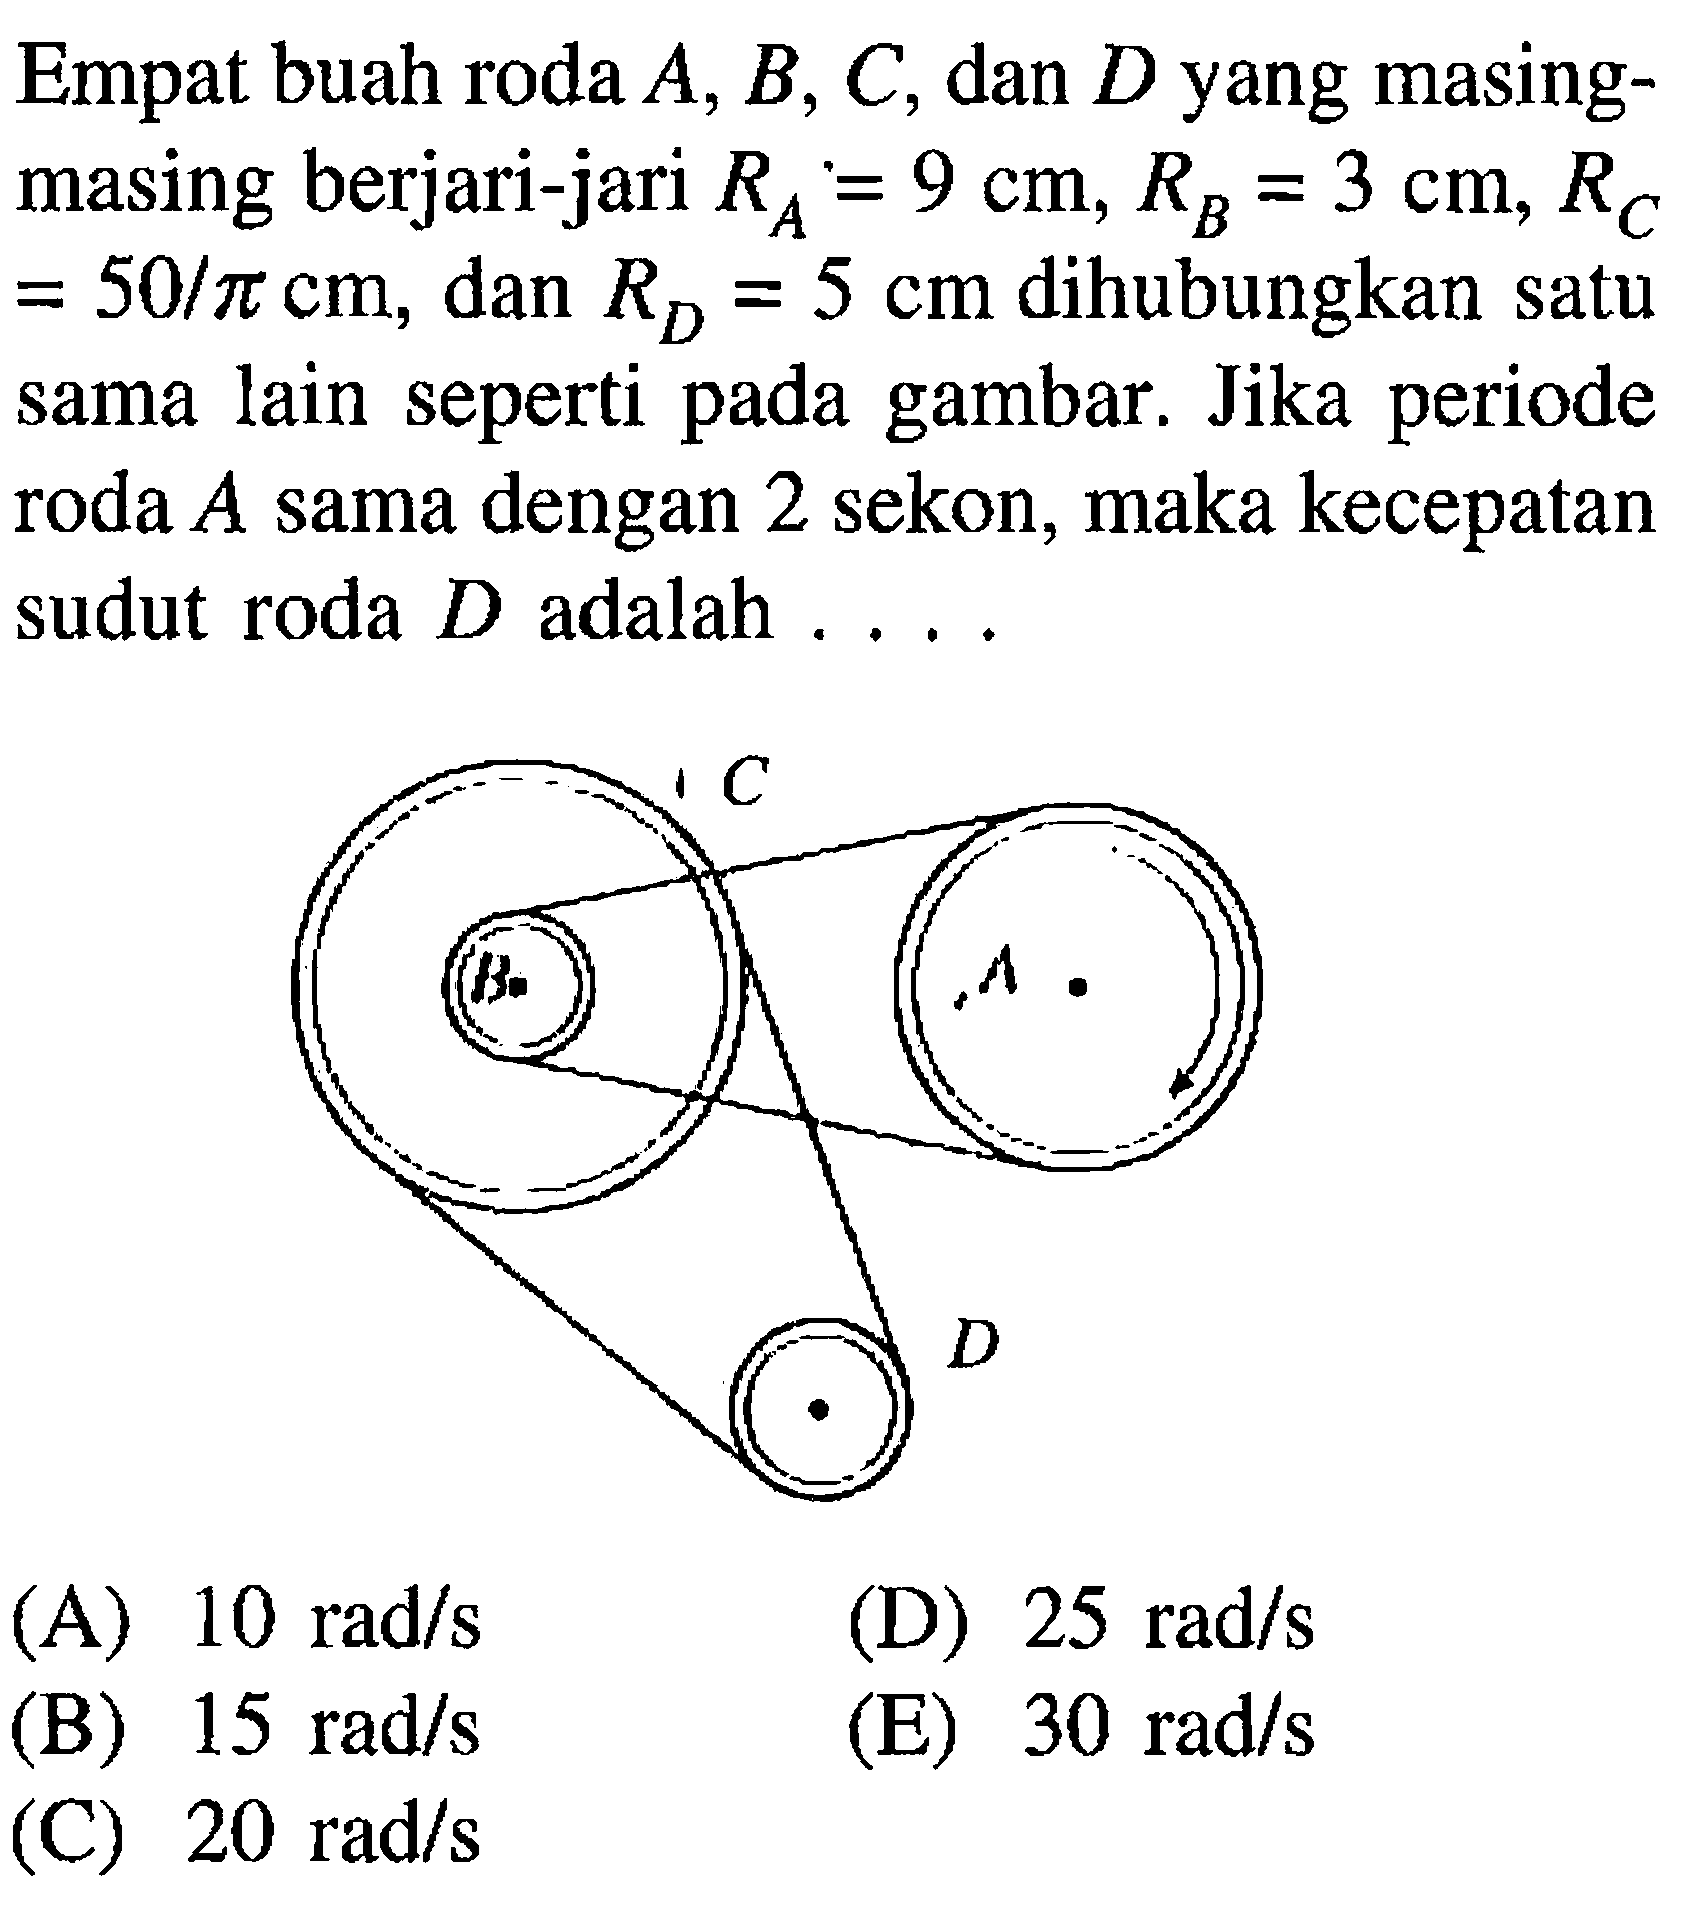 Empat buah roda A, B, C, dan D yang masing-masing berjari-jari RA = 9 cm, RB = 3, RC = 50/pi cm, dan RD = 5 cm dihubungkan satu sama lain seperti pada gambar. Jika periode roda A sama dengan 2 sekon, maka kecepatan sudut roda D adalah.... C A D